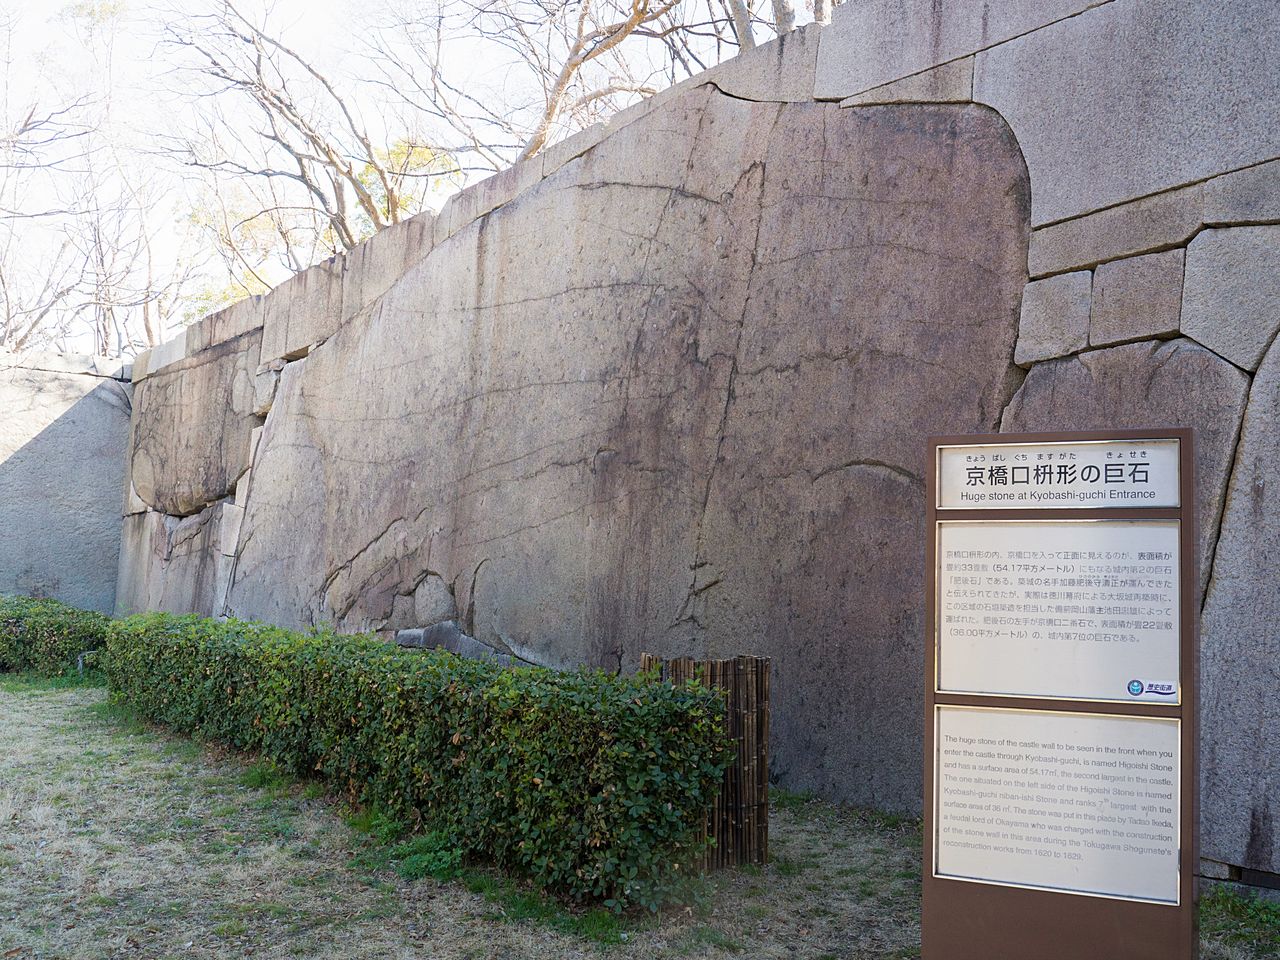 Камень Хигоиси для масугата входа Кёбаси был доставлен из княжества Бидзэн-Окаяма. Площадь поверхности составляет 33 татами